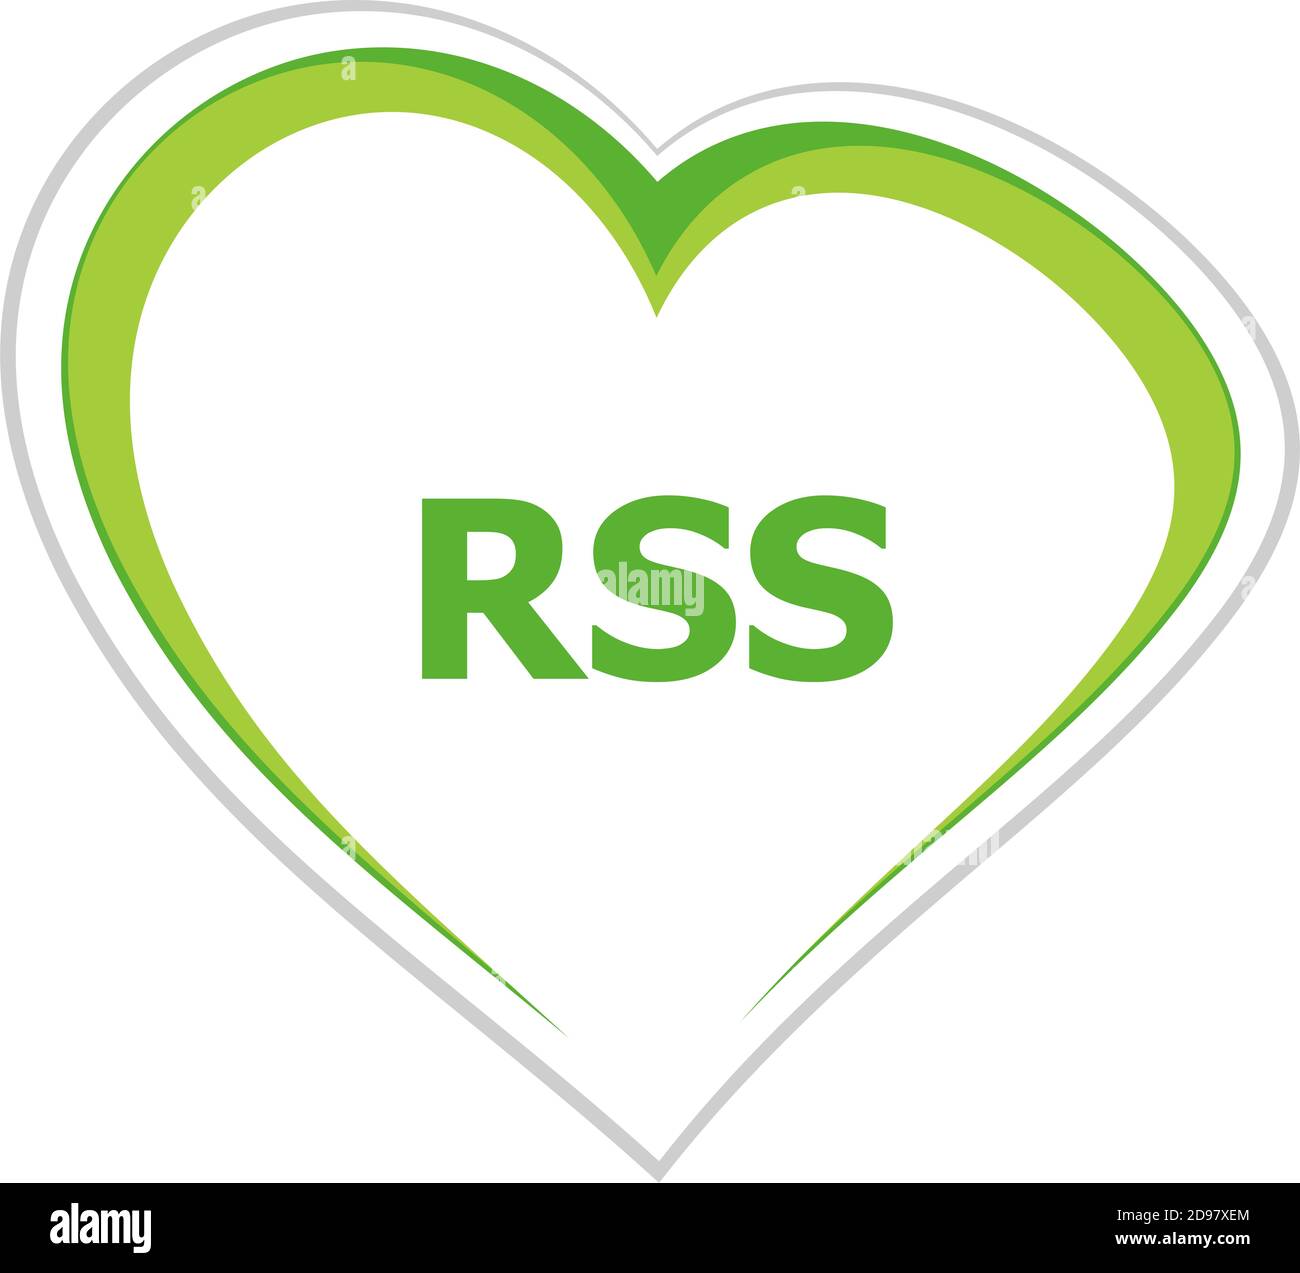 Text Rss. web design concept Stock Photo